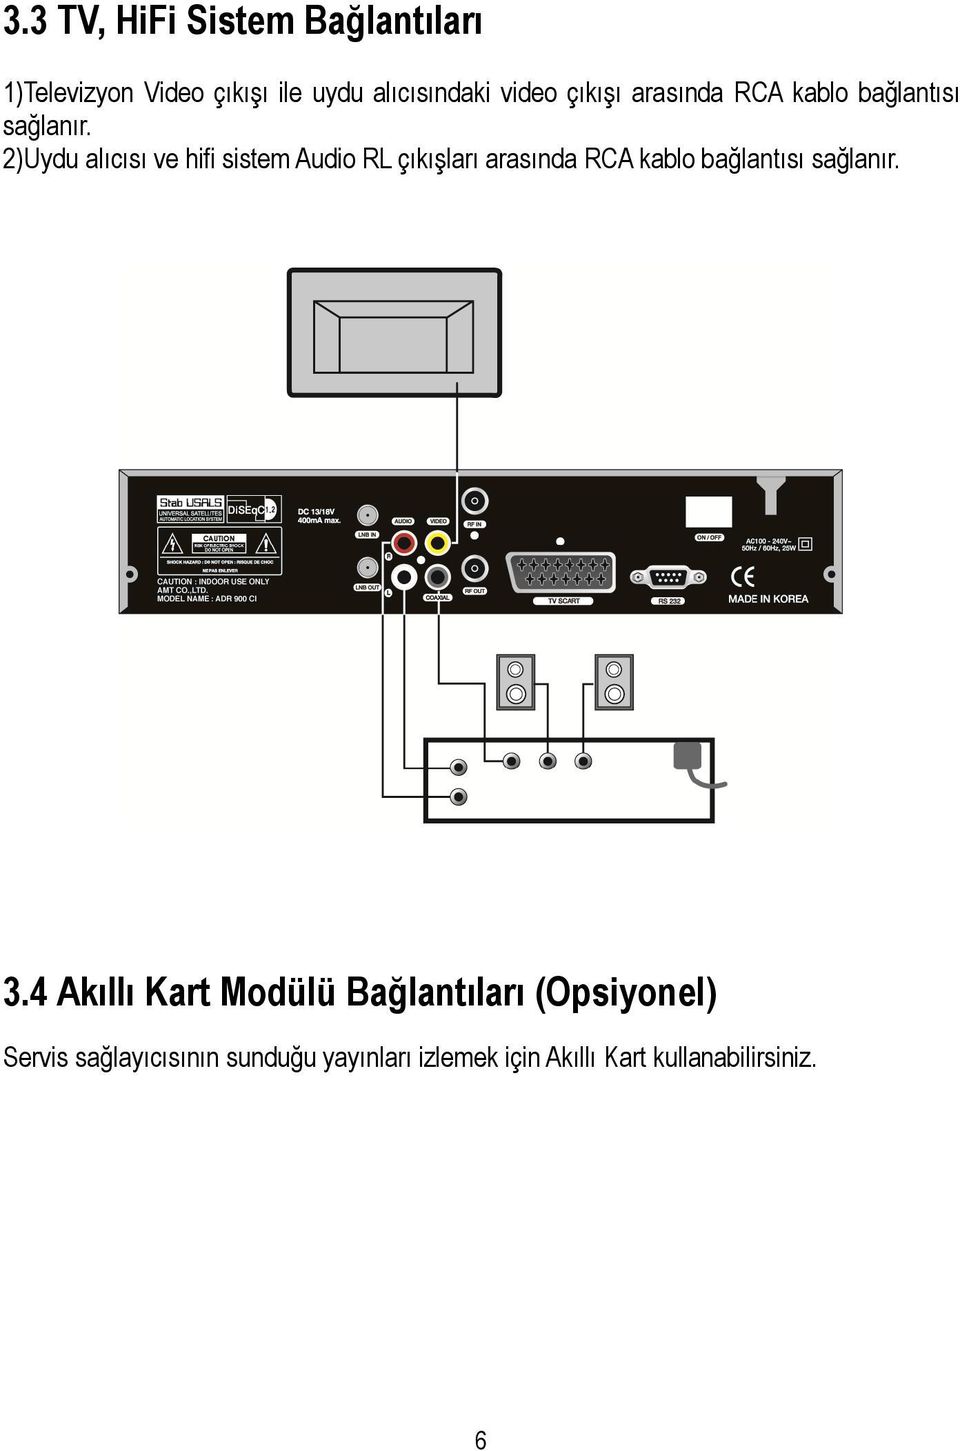 2)Uydu alıcısı ve hifi sistem Audio RL çıkışları arasında RCA kablo bağlantısı sağlanır.